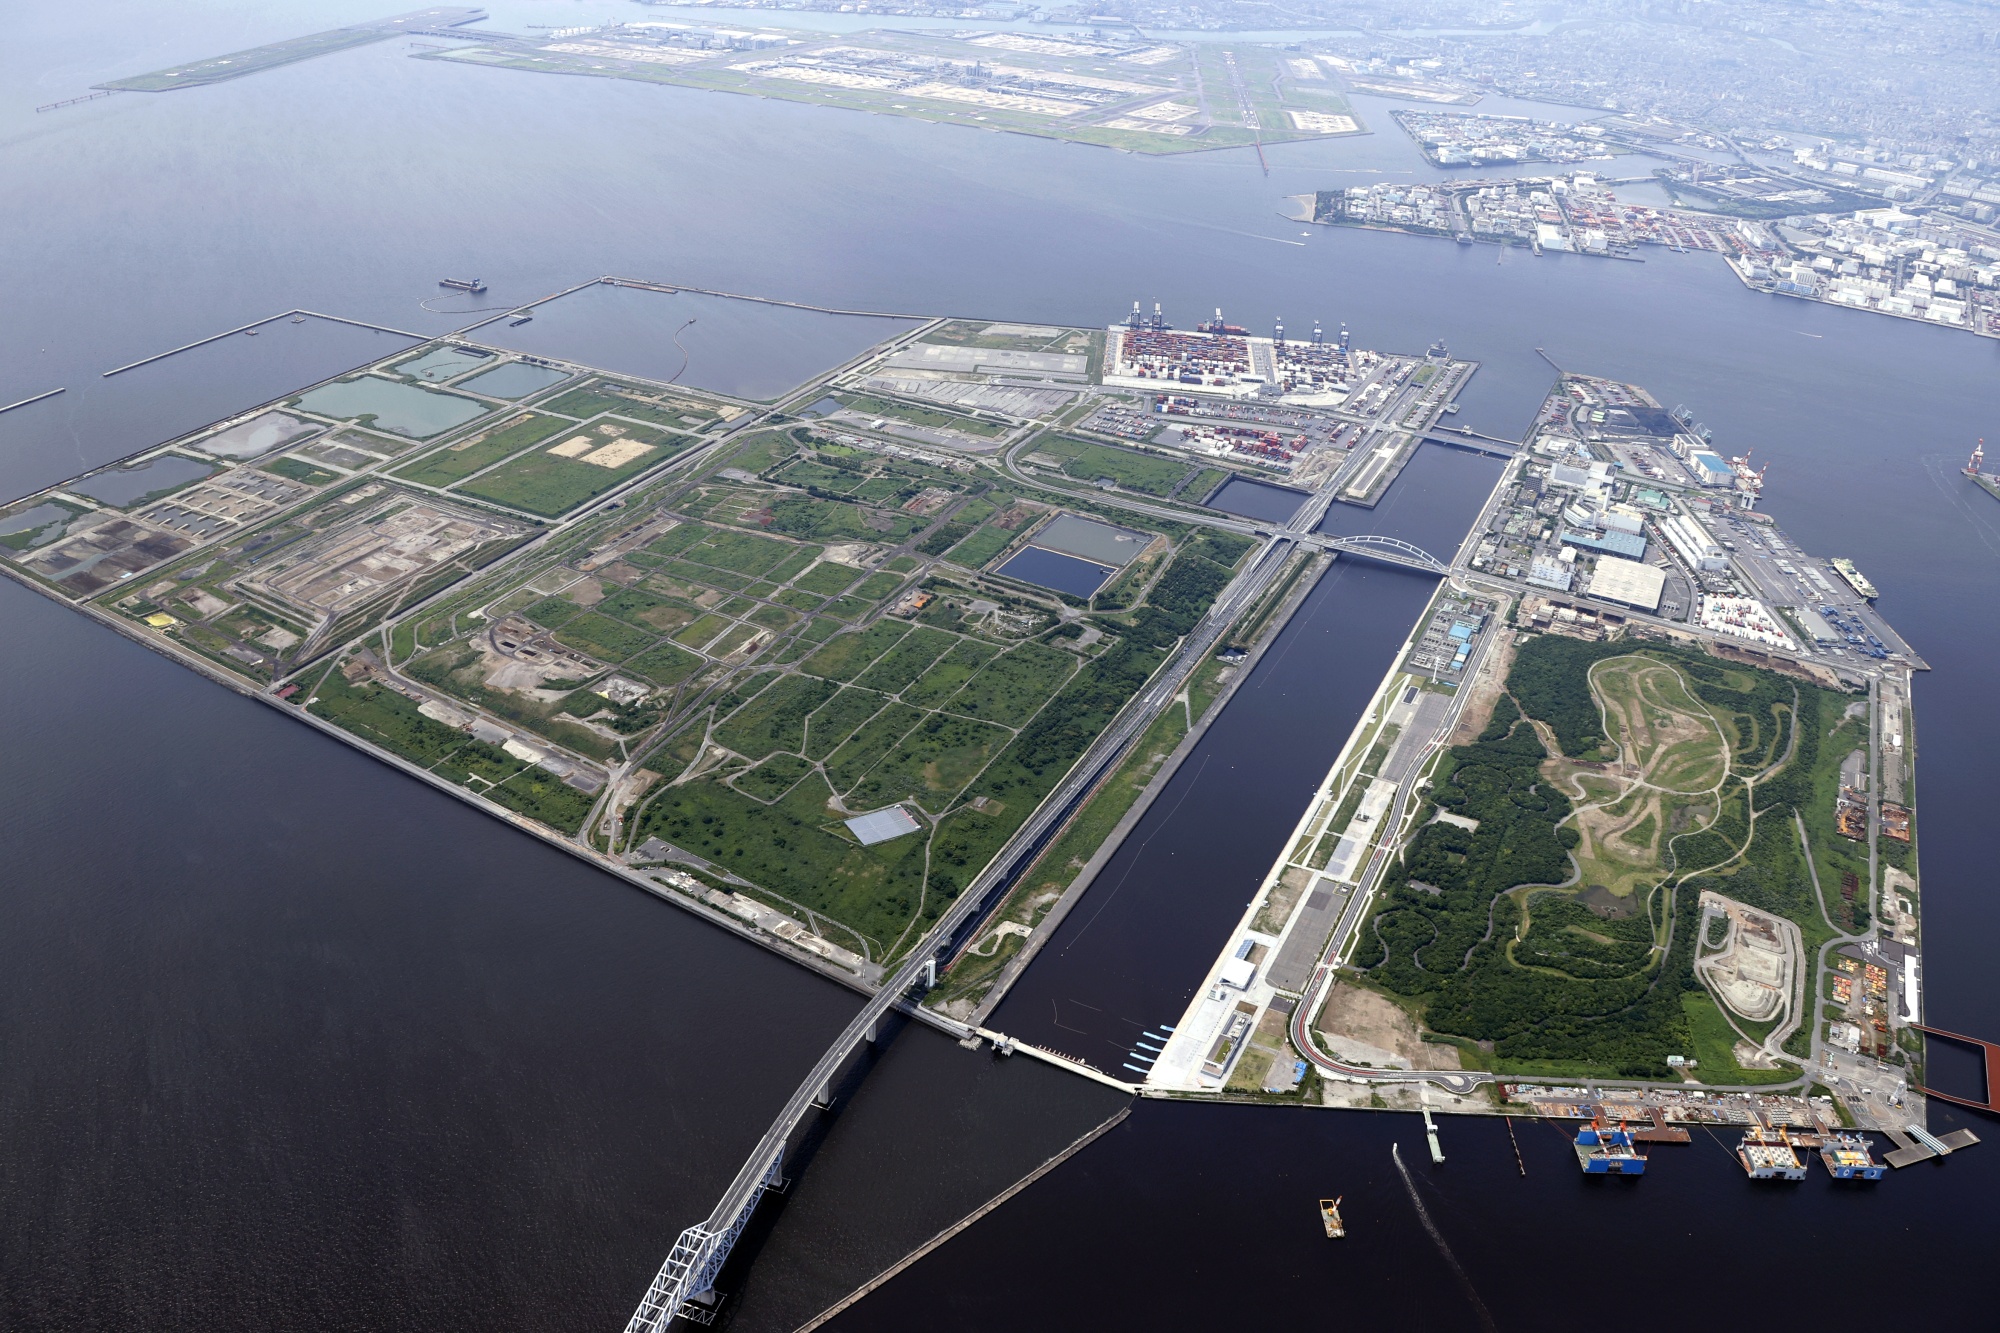 Tokyo Bay eSG Project 4. Credit - Tokyo Metropolitan Government